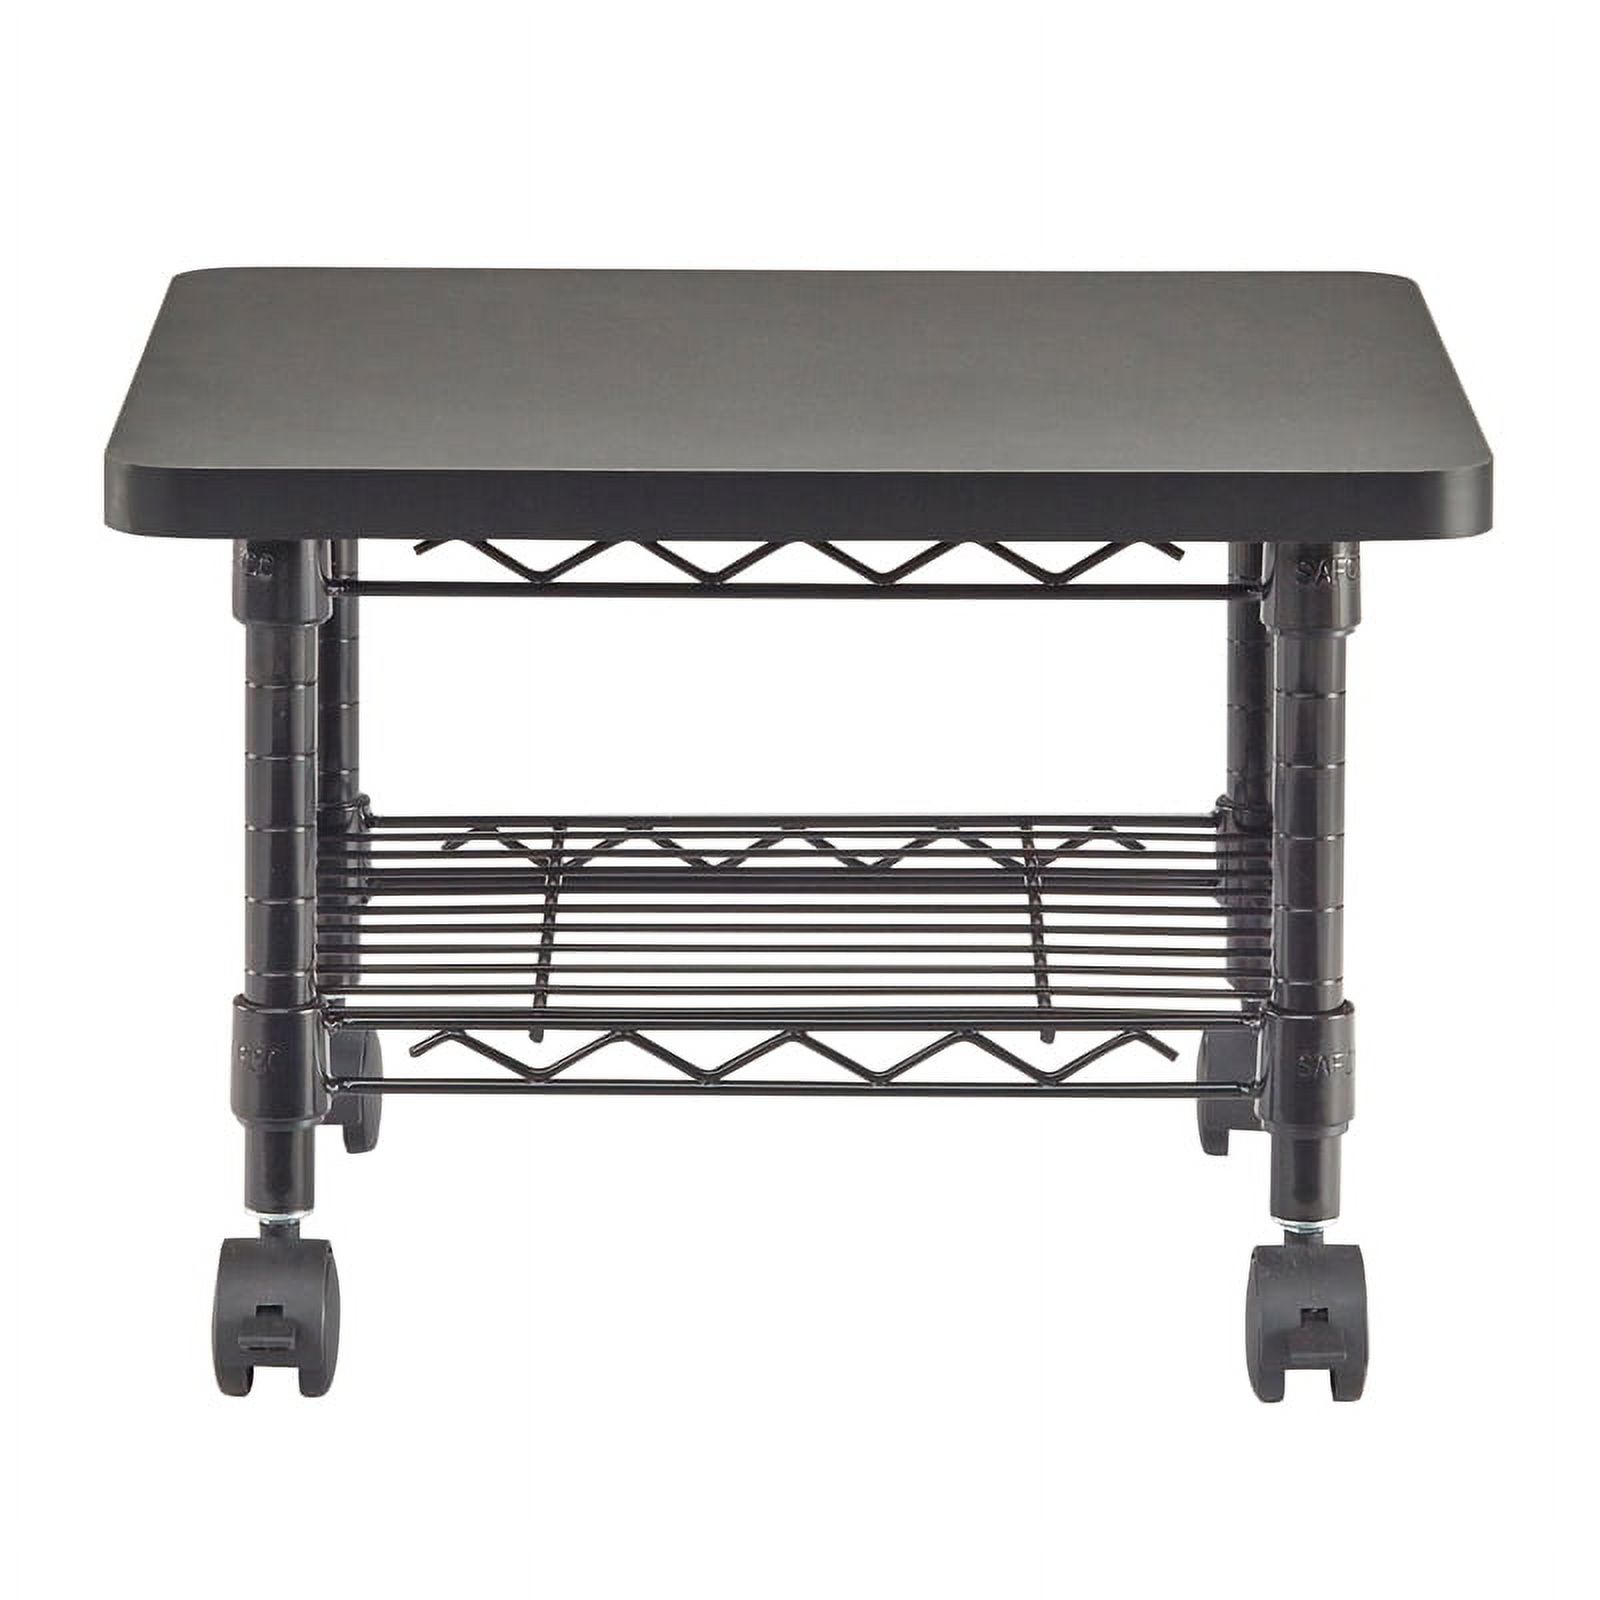 Safco Under-Desk Steel Frame Printer/Fax Stand in Black - image 4 of 7